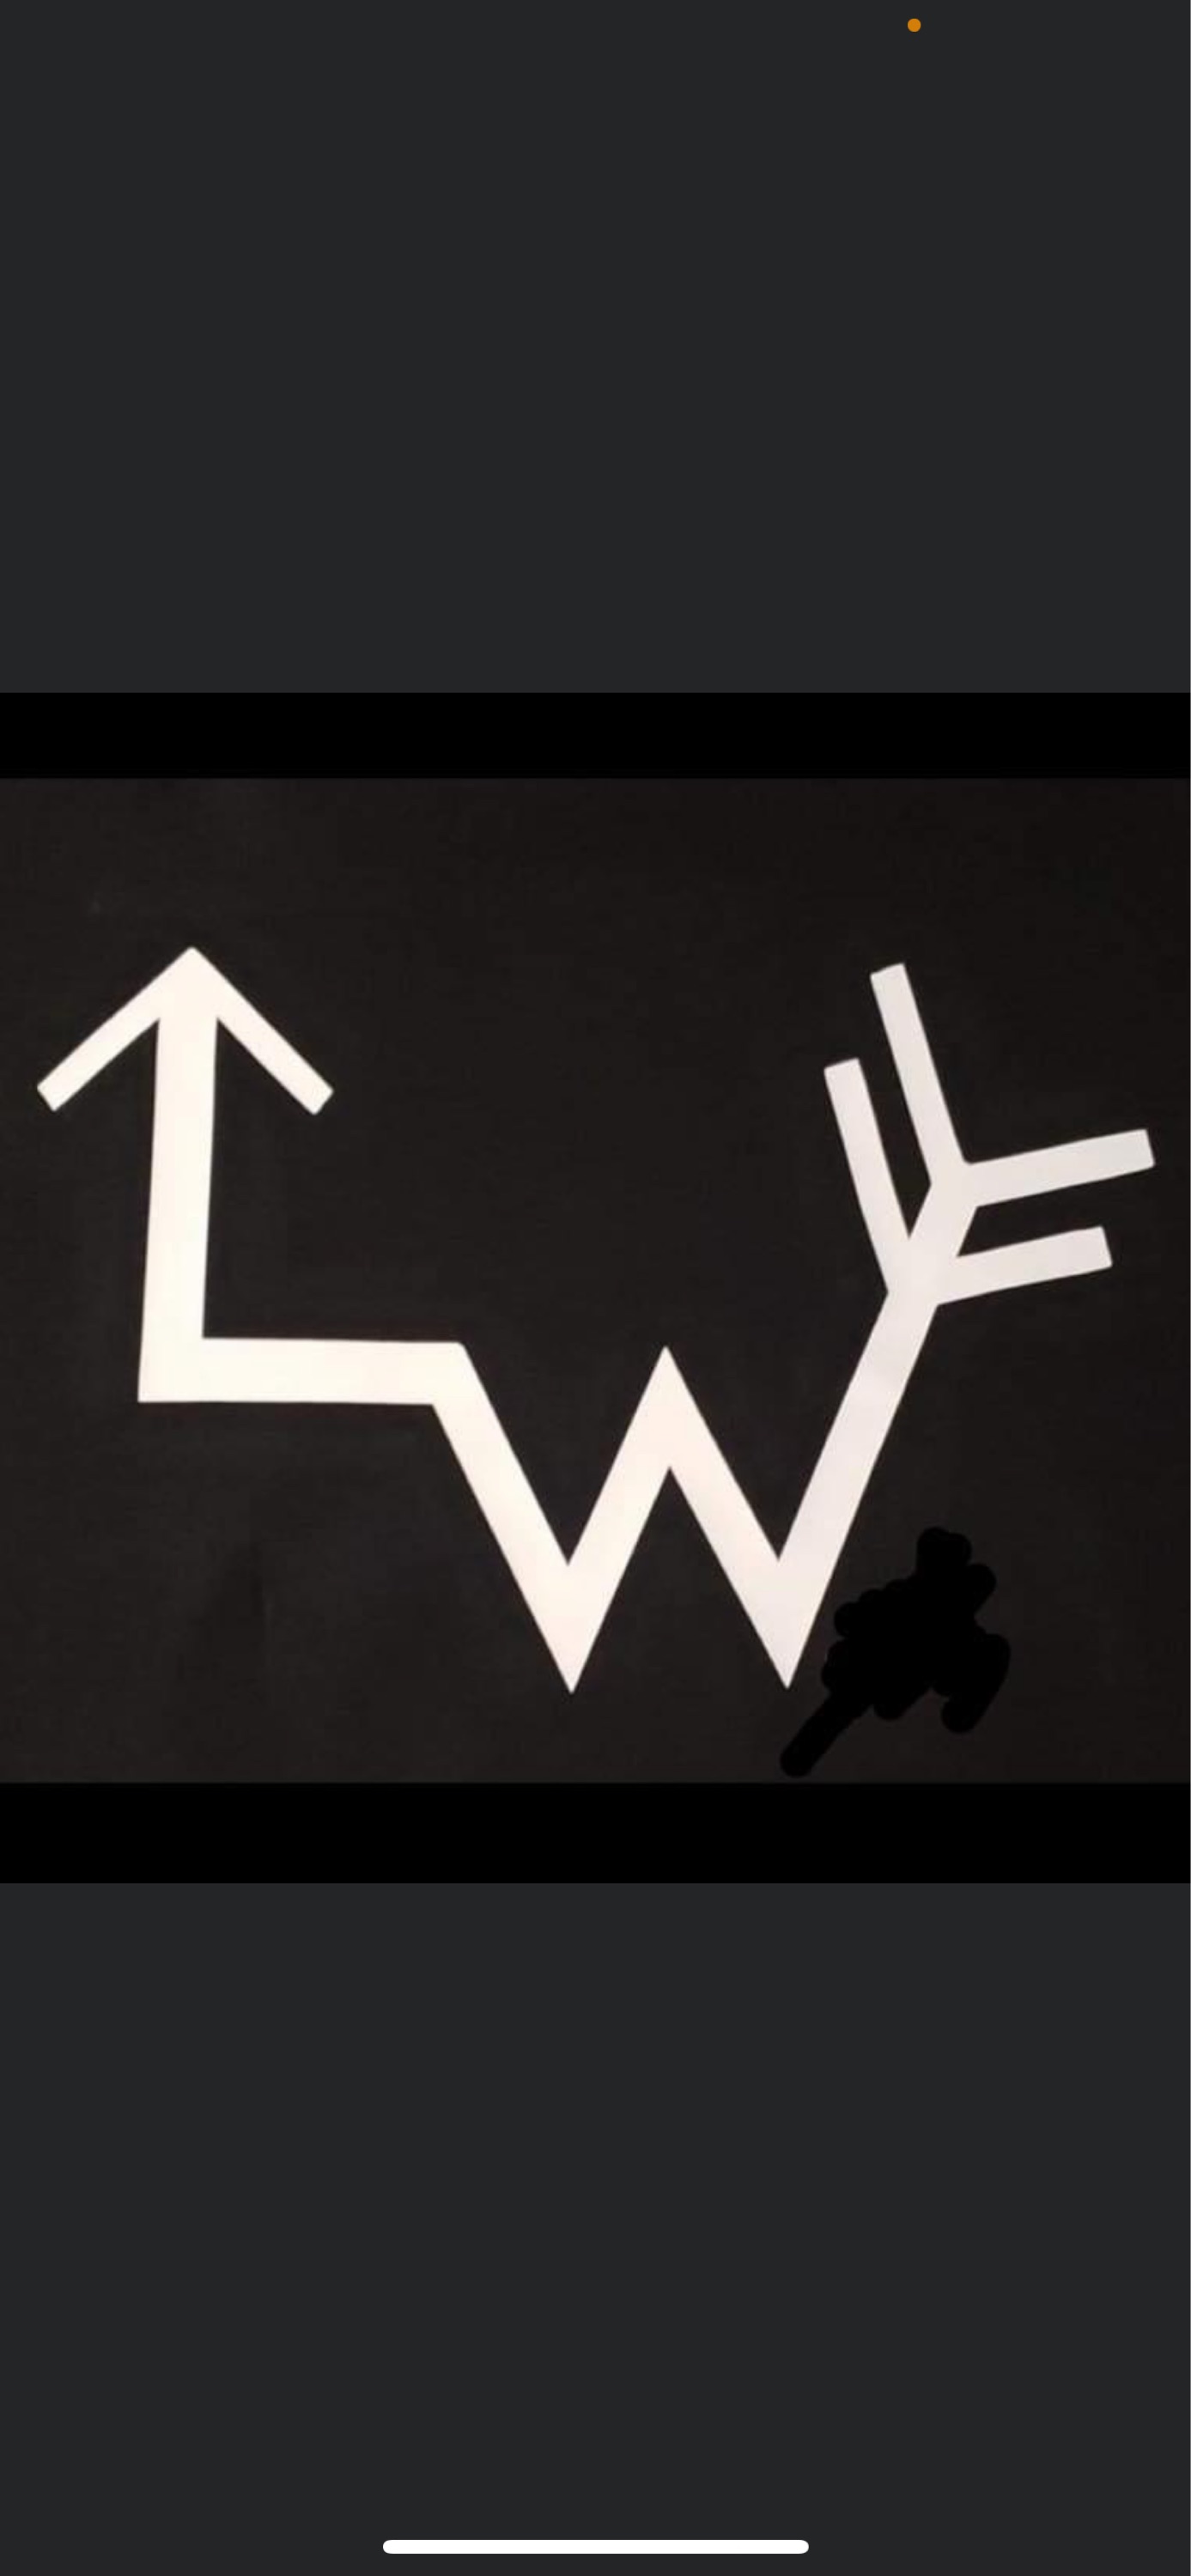 LW Fencing Company Logo